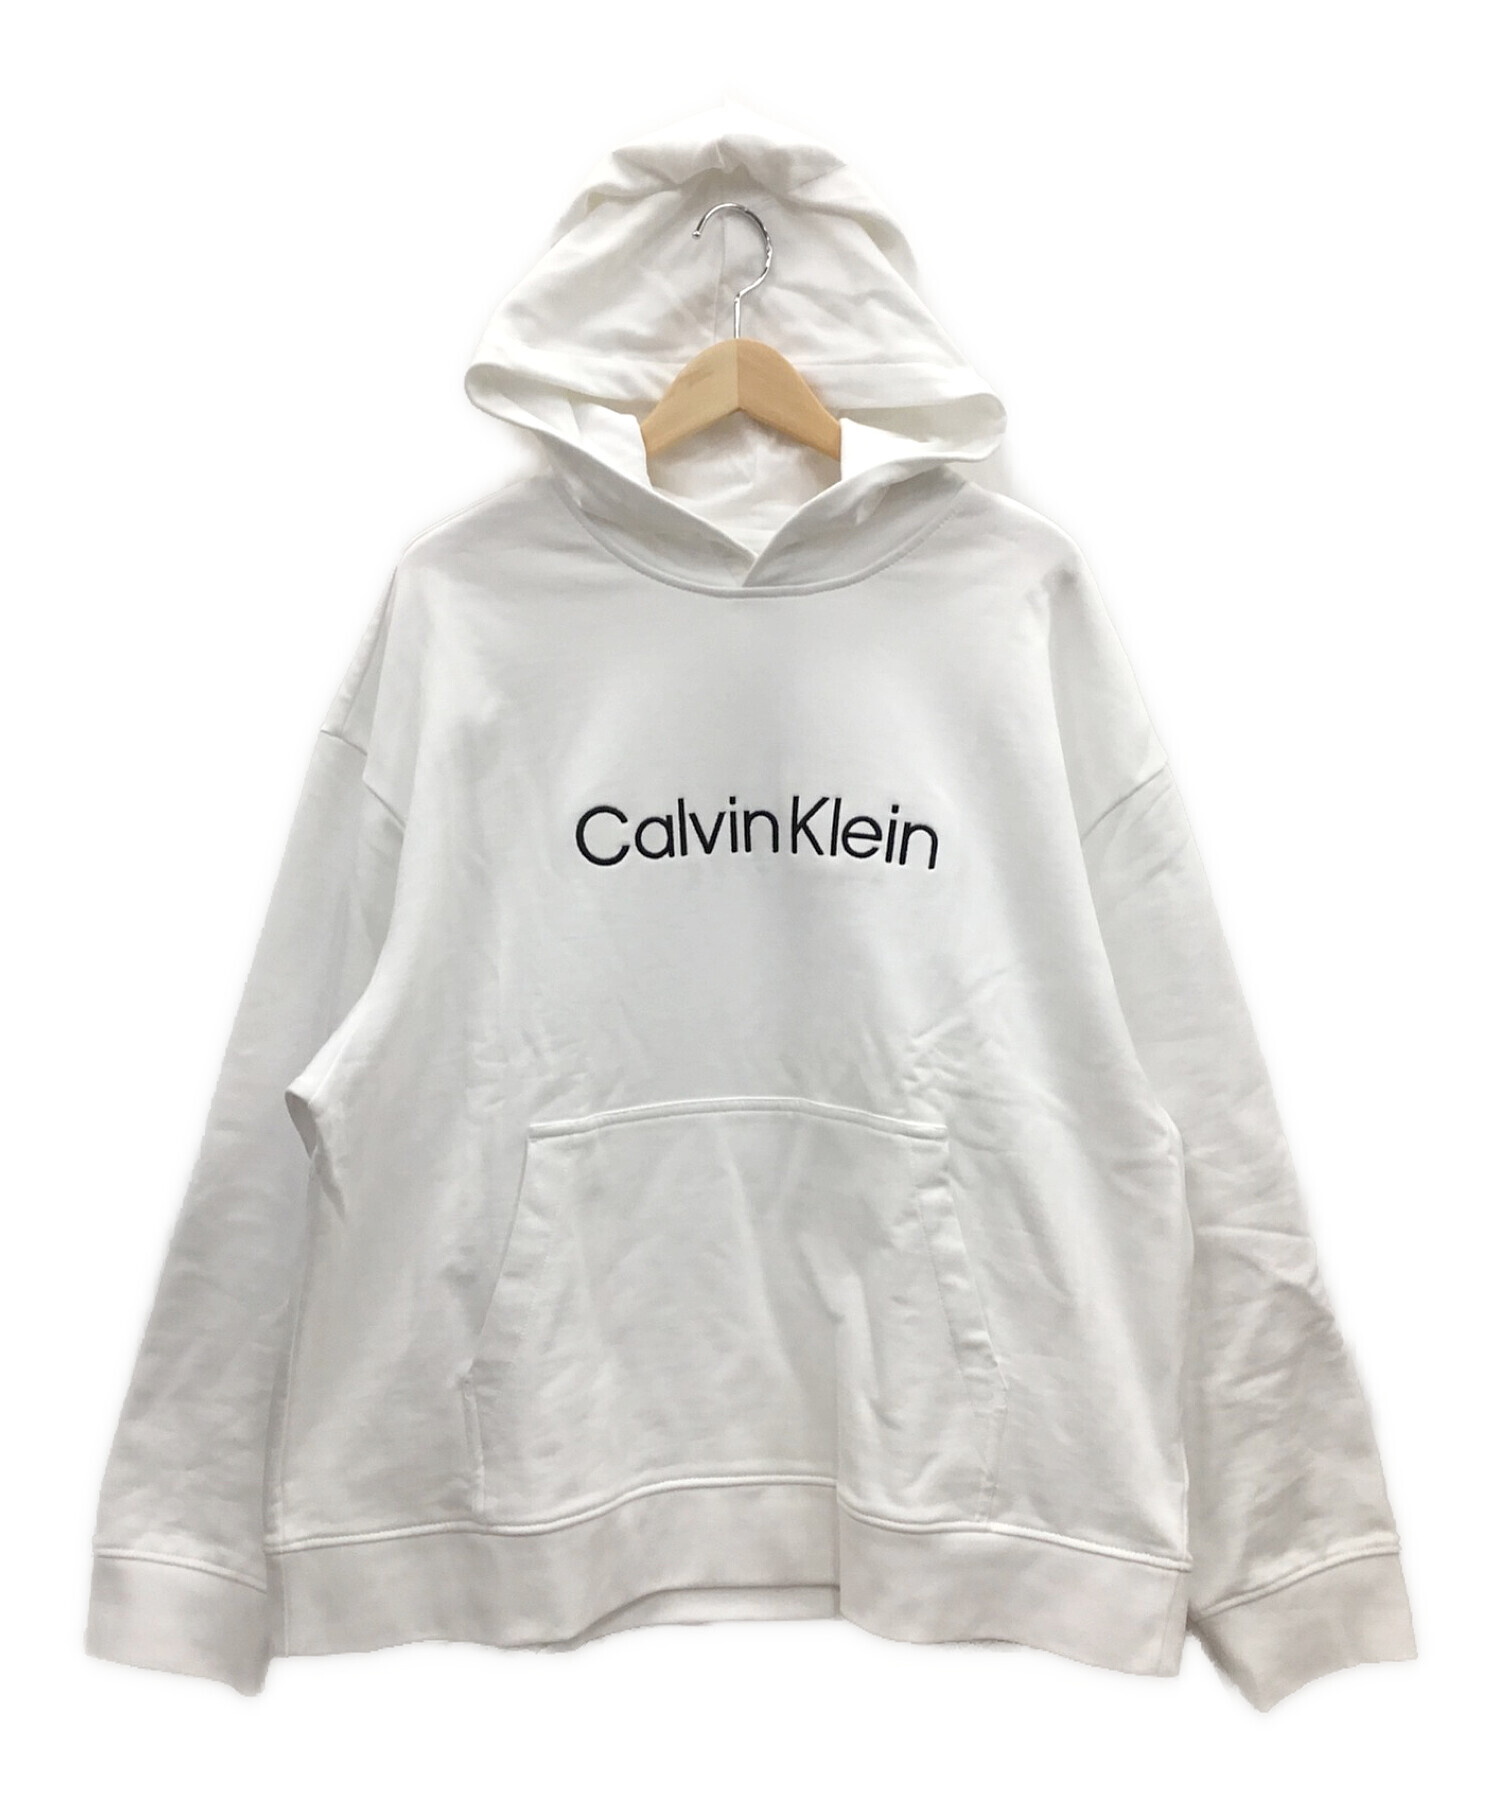 Calvin Klein (カルバンクライン) スタンダードロゴパーカー ホワイト サイズ:L 未使用品